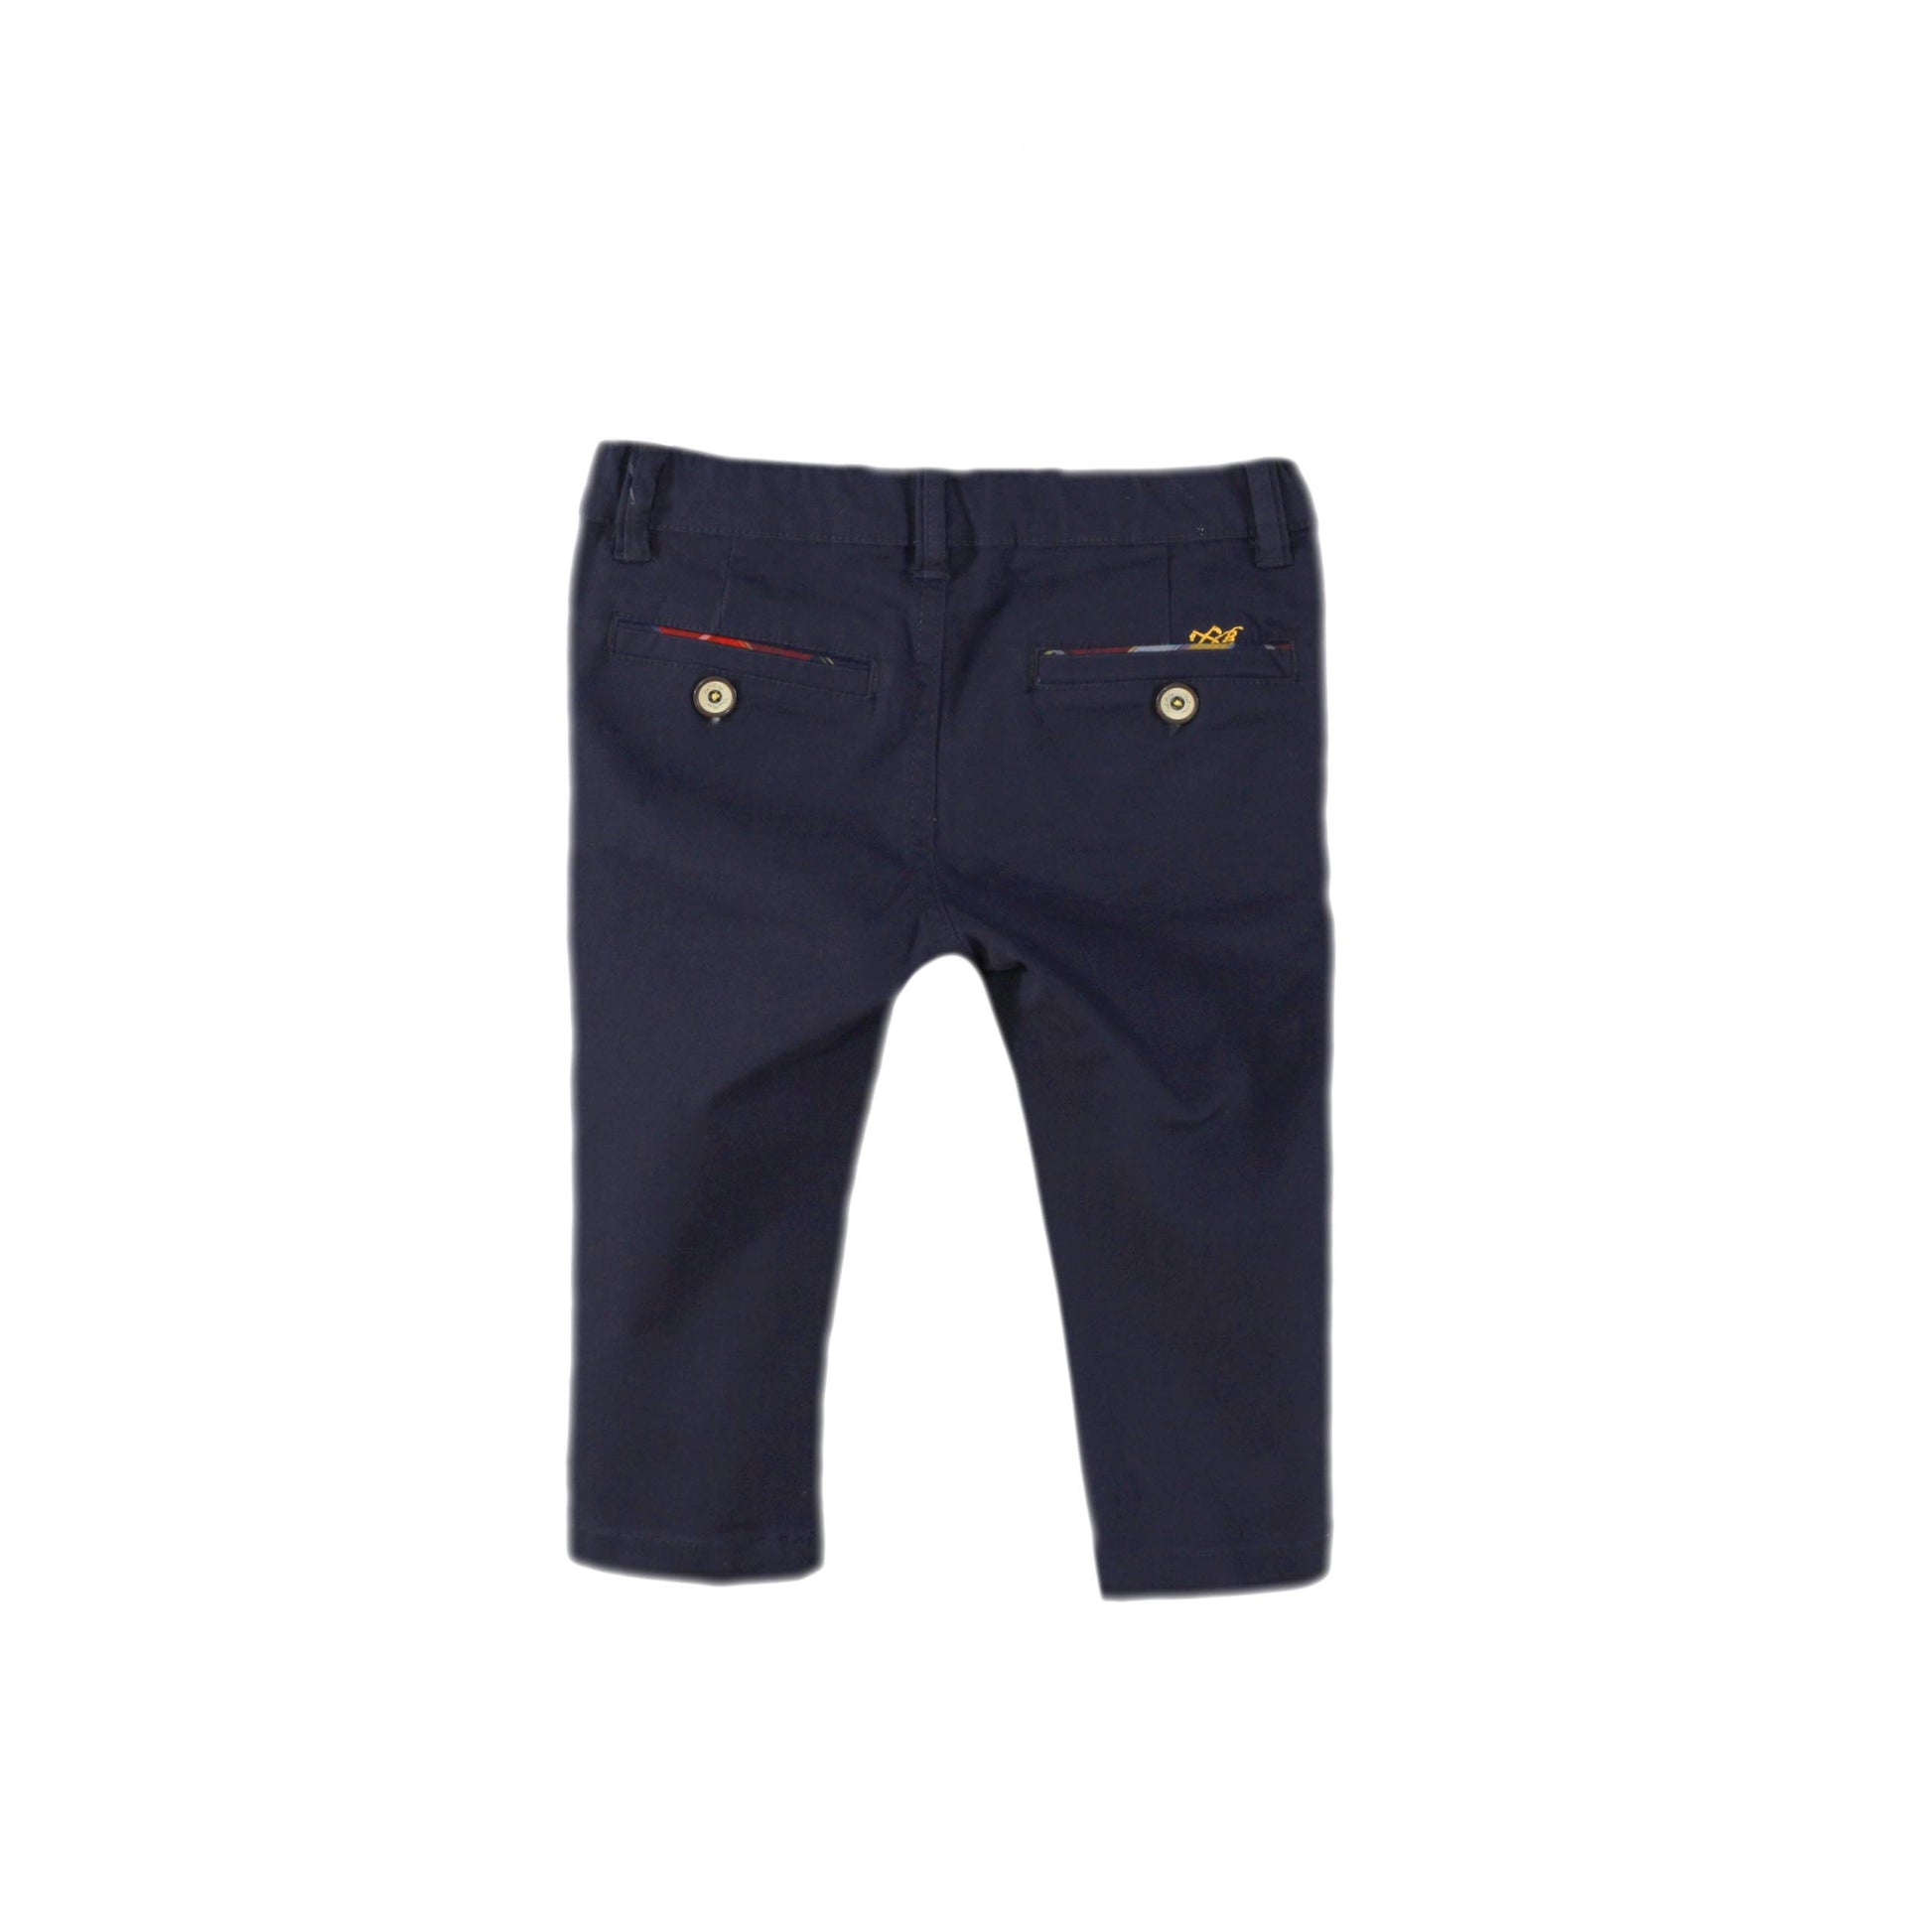 MIRANDA NEL BLU Grey & Navy Baby Boys Trouser Set - 1107